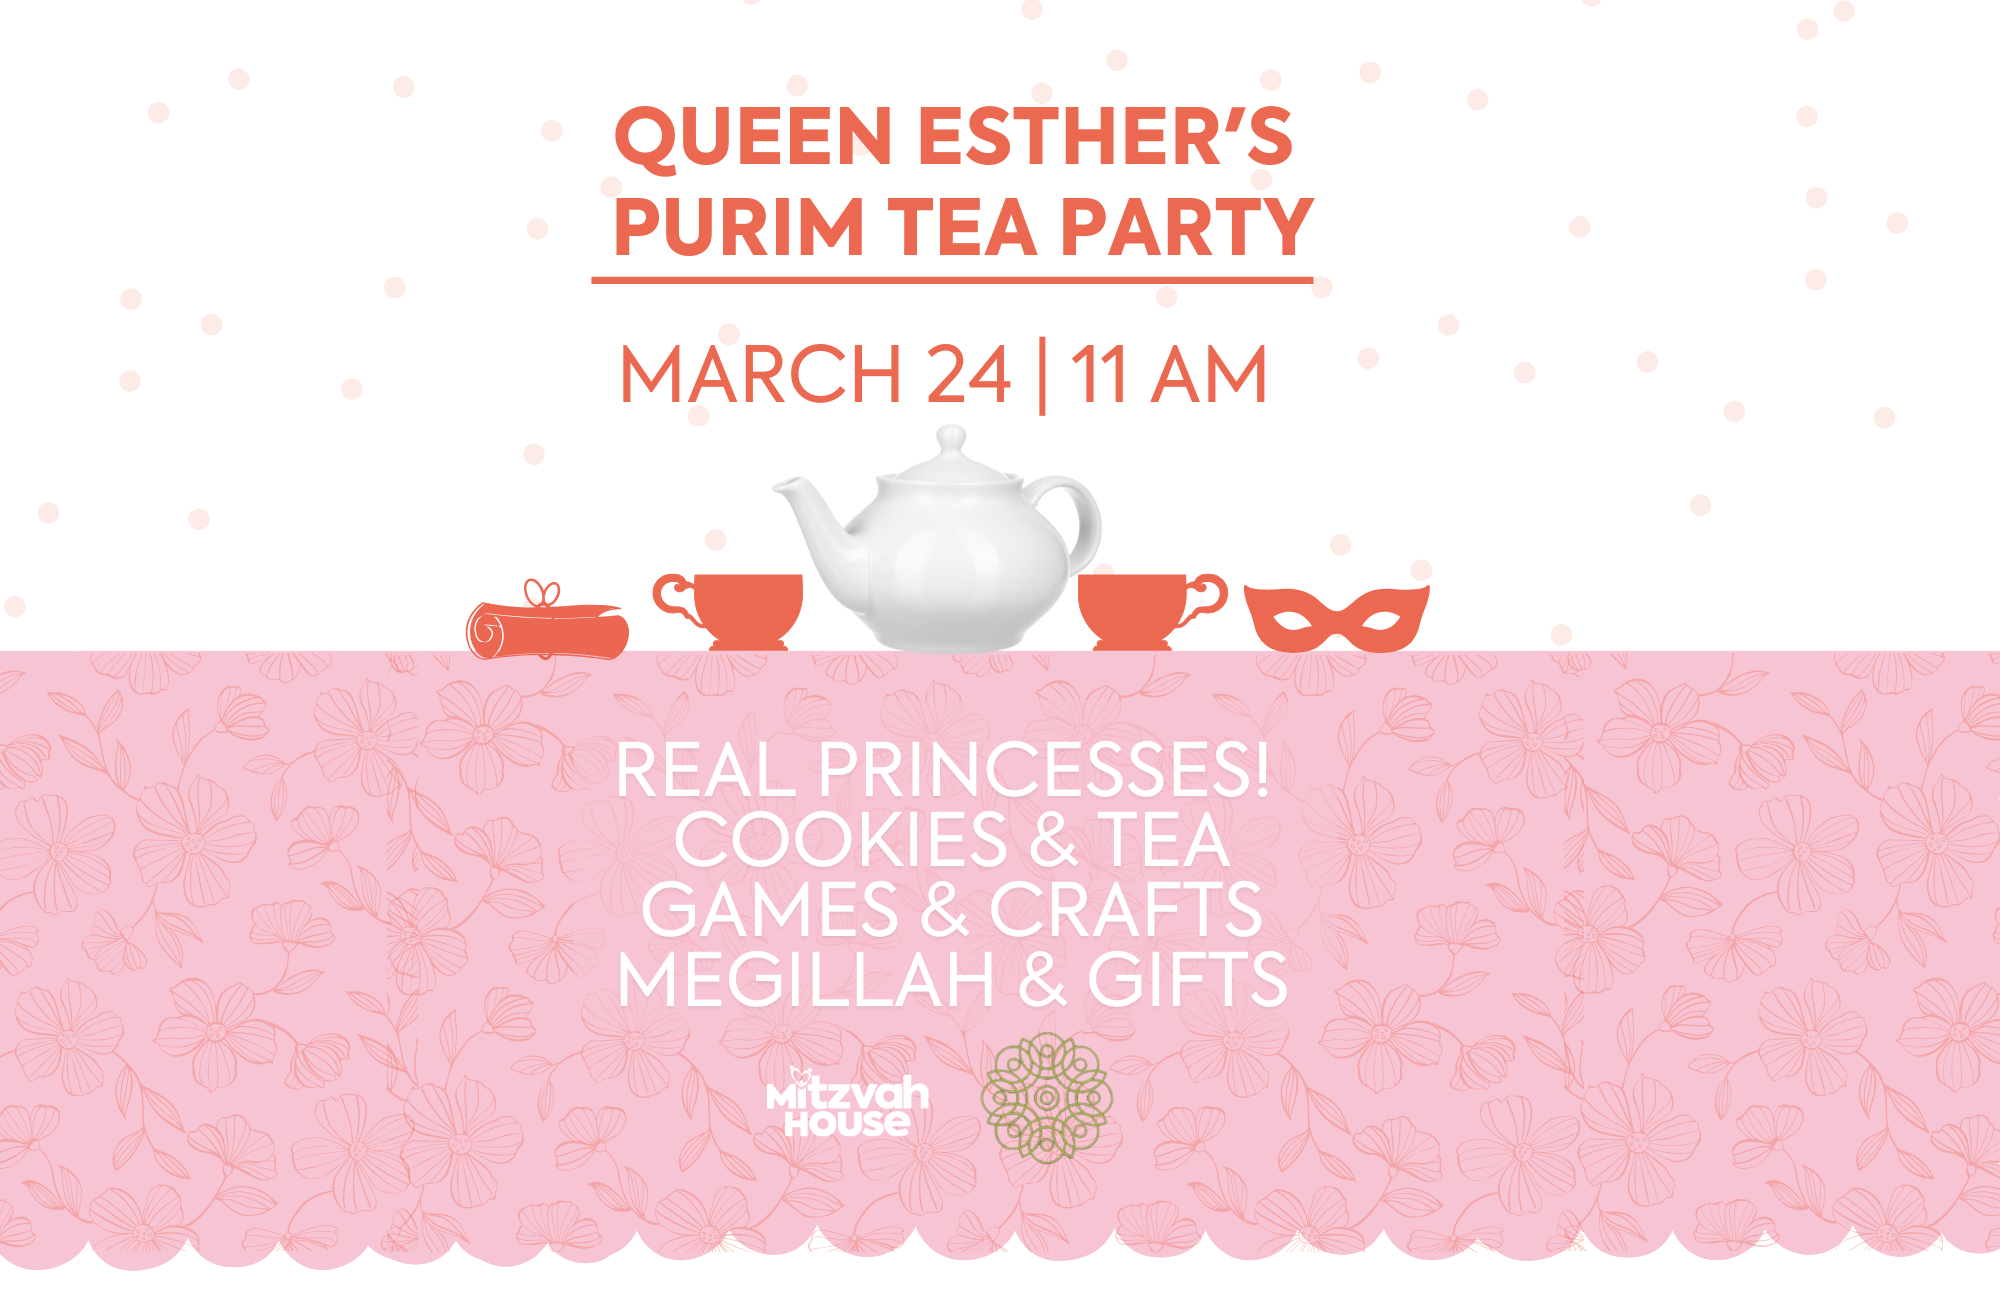 Queen Esther's Purim Tea Party